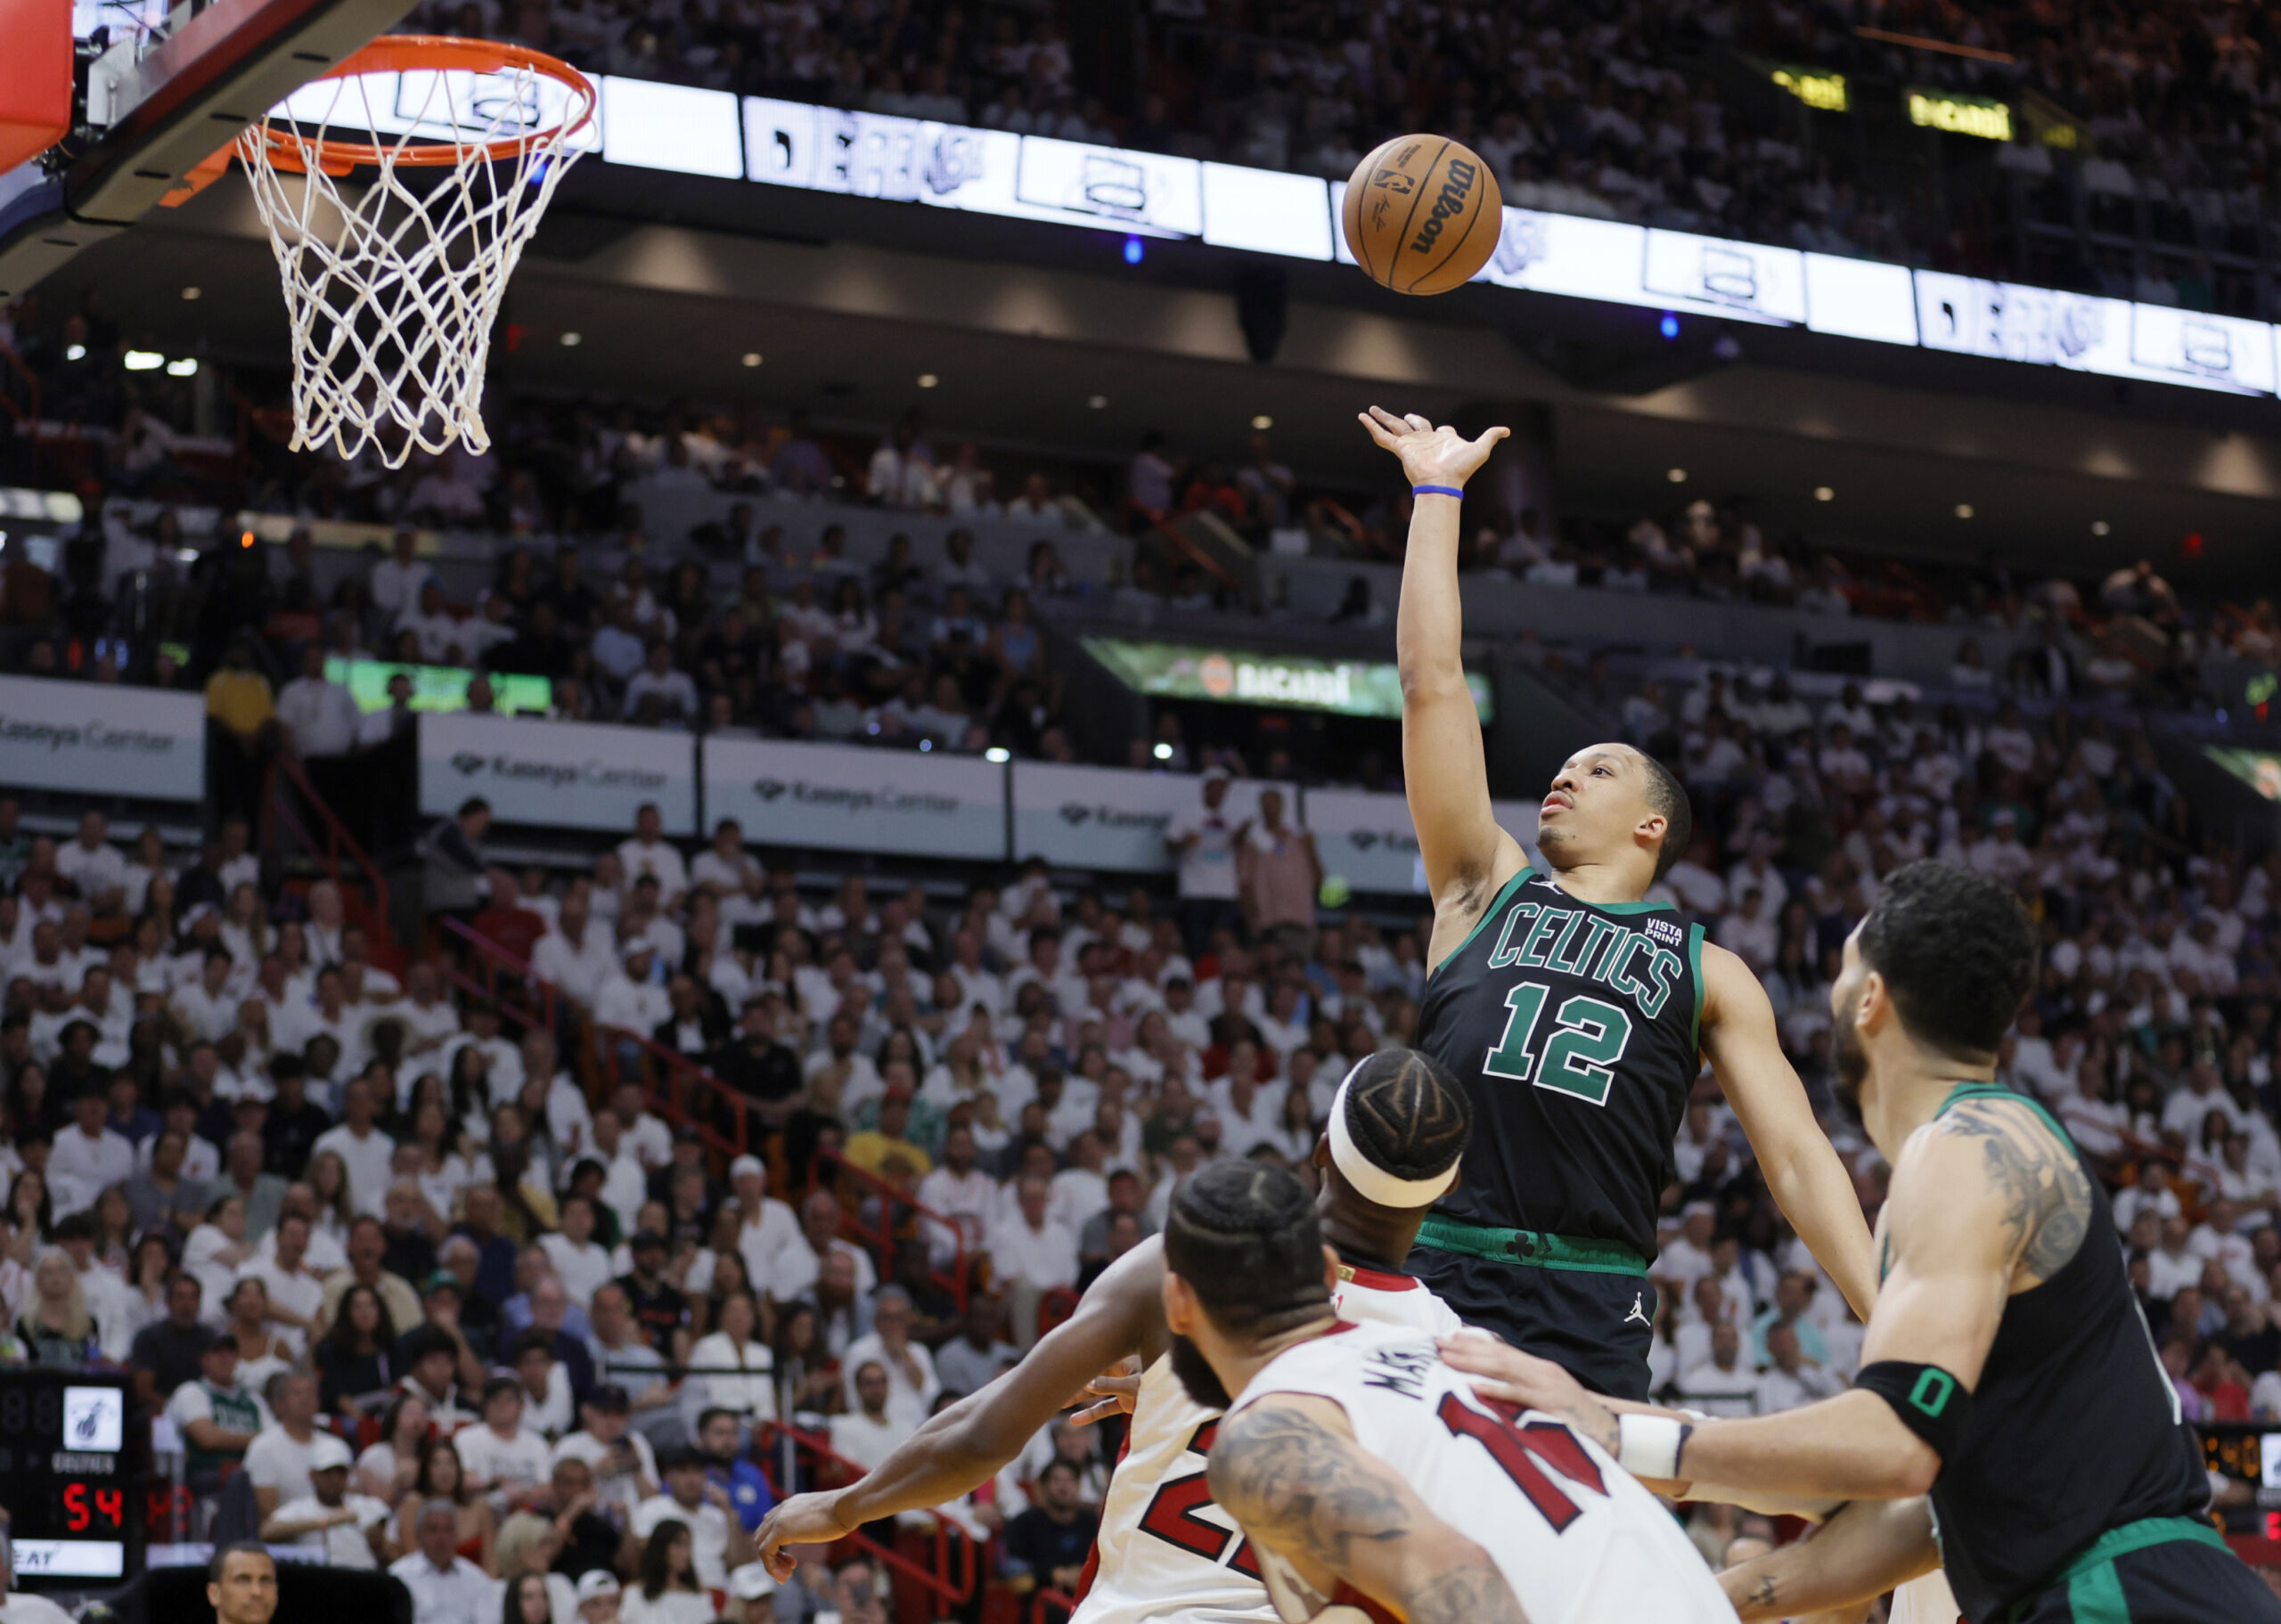 Fans make their return for a Celtics game at TD Garden